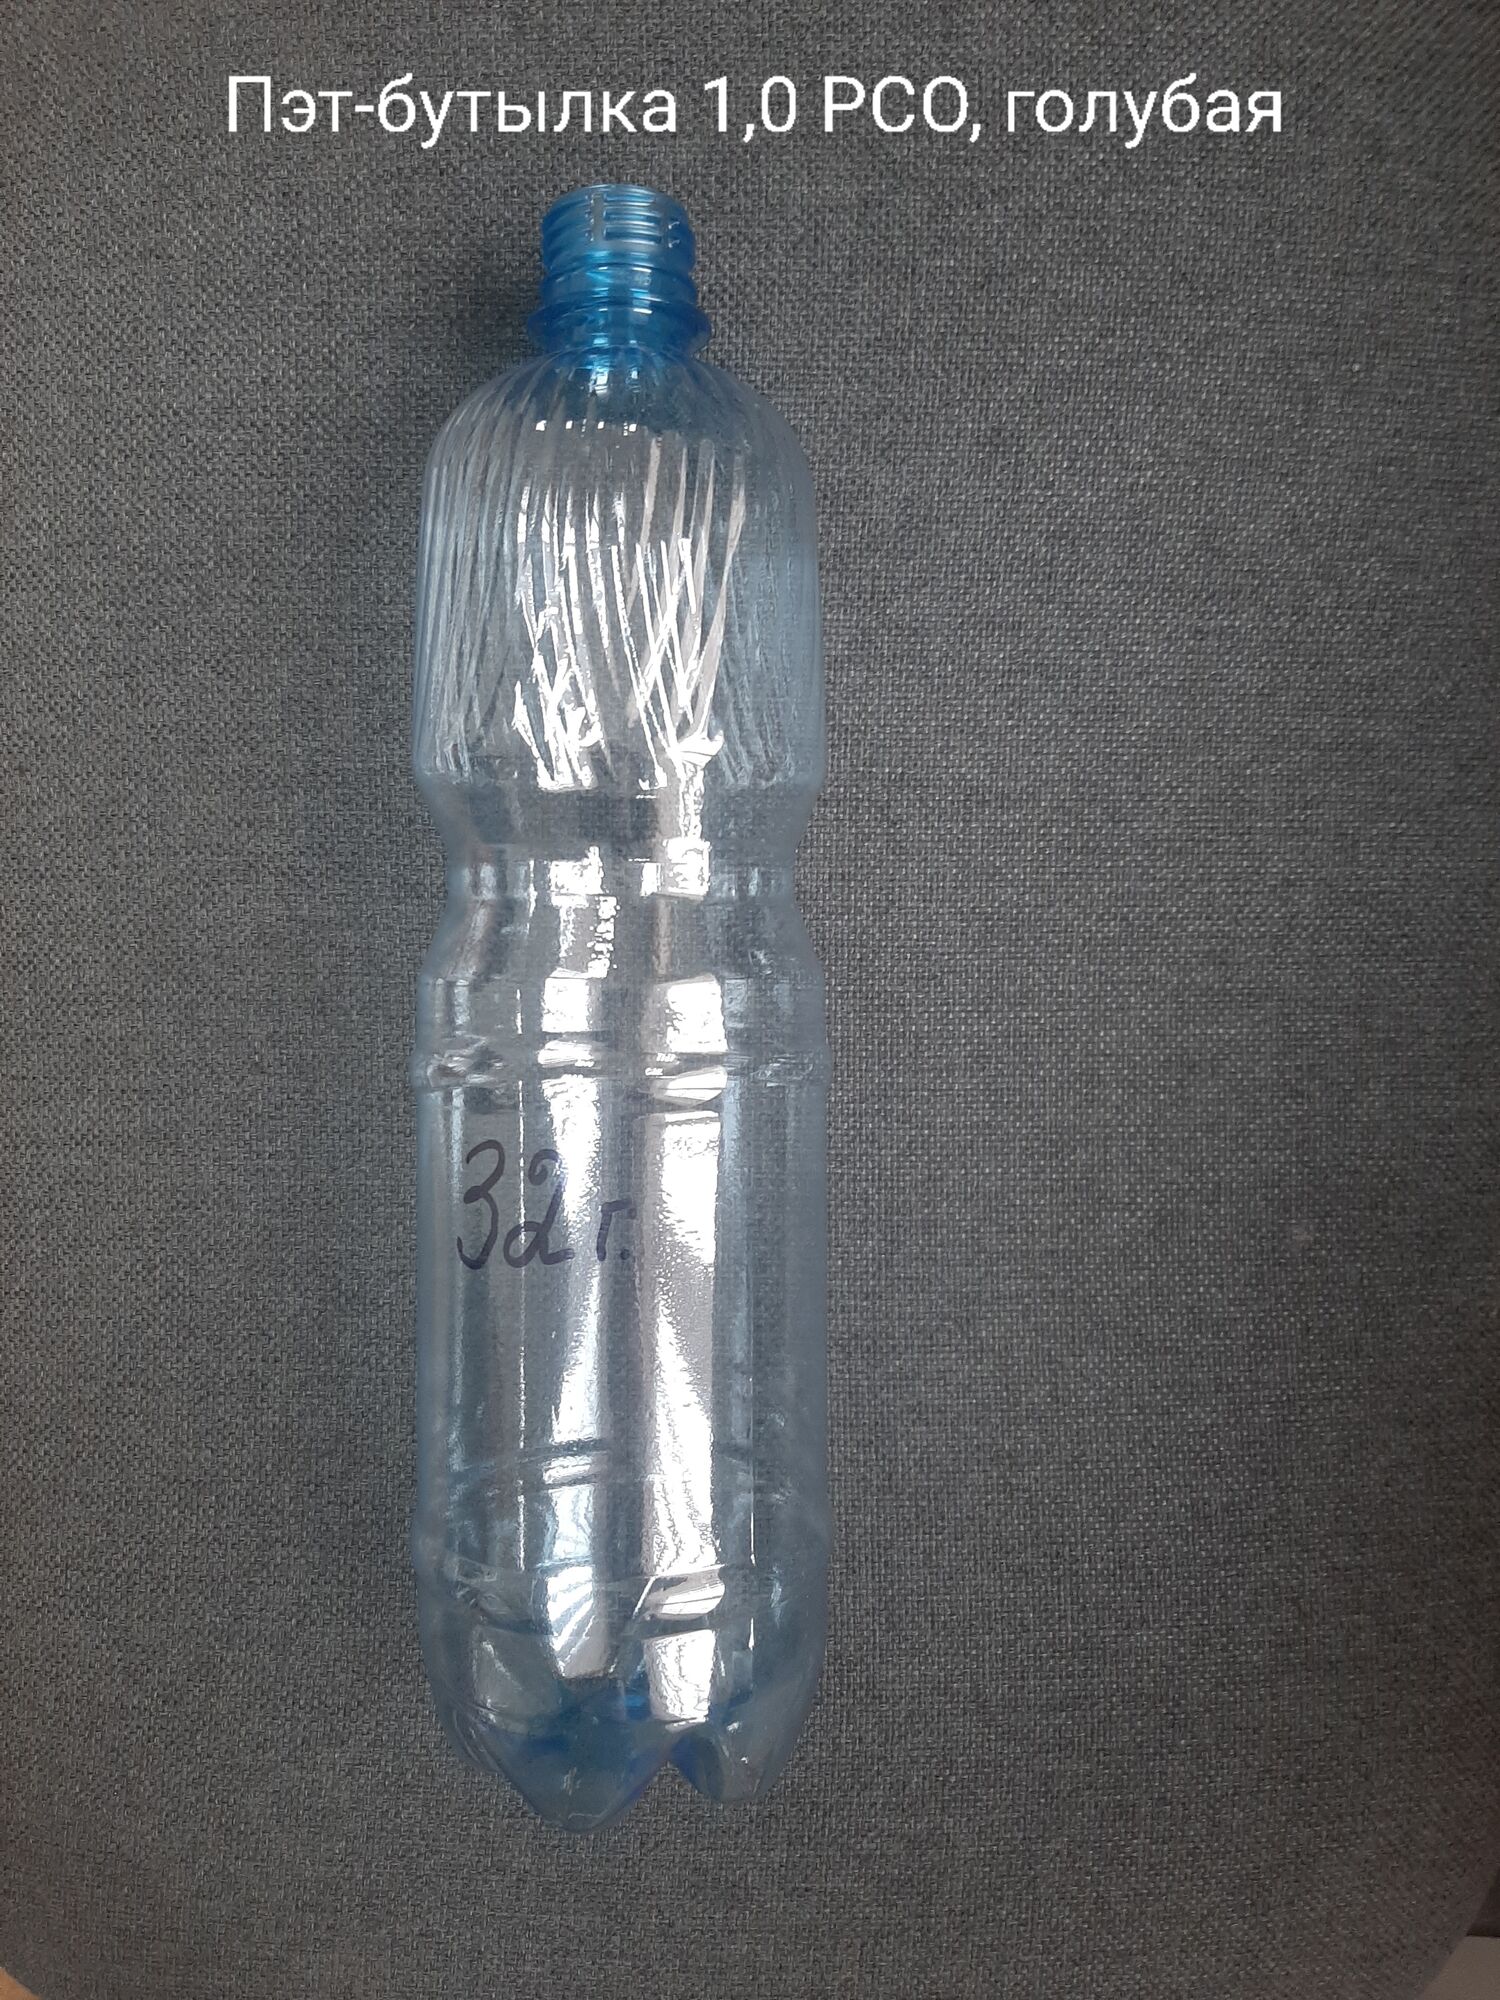 Пэт-бутылка 1,0 PCO, голубая (120 шт в упаковке) 32 гр